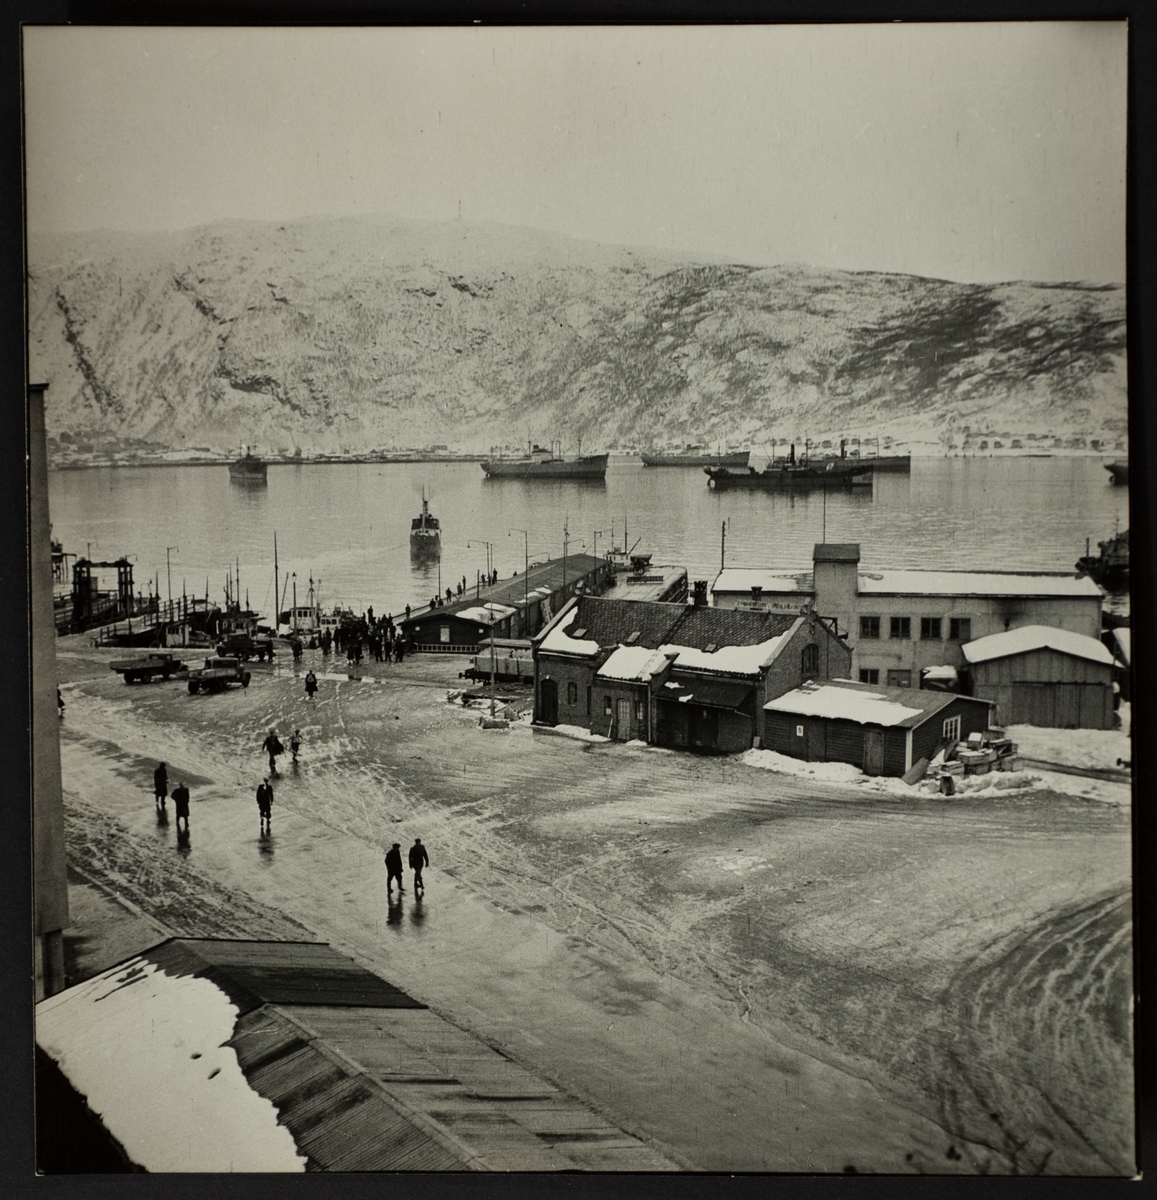 Vy över hamnplan, Narvik. Båtar ligger på redden, parkerade bilar och människor i rörelse. I bakgrunden fjäll.